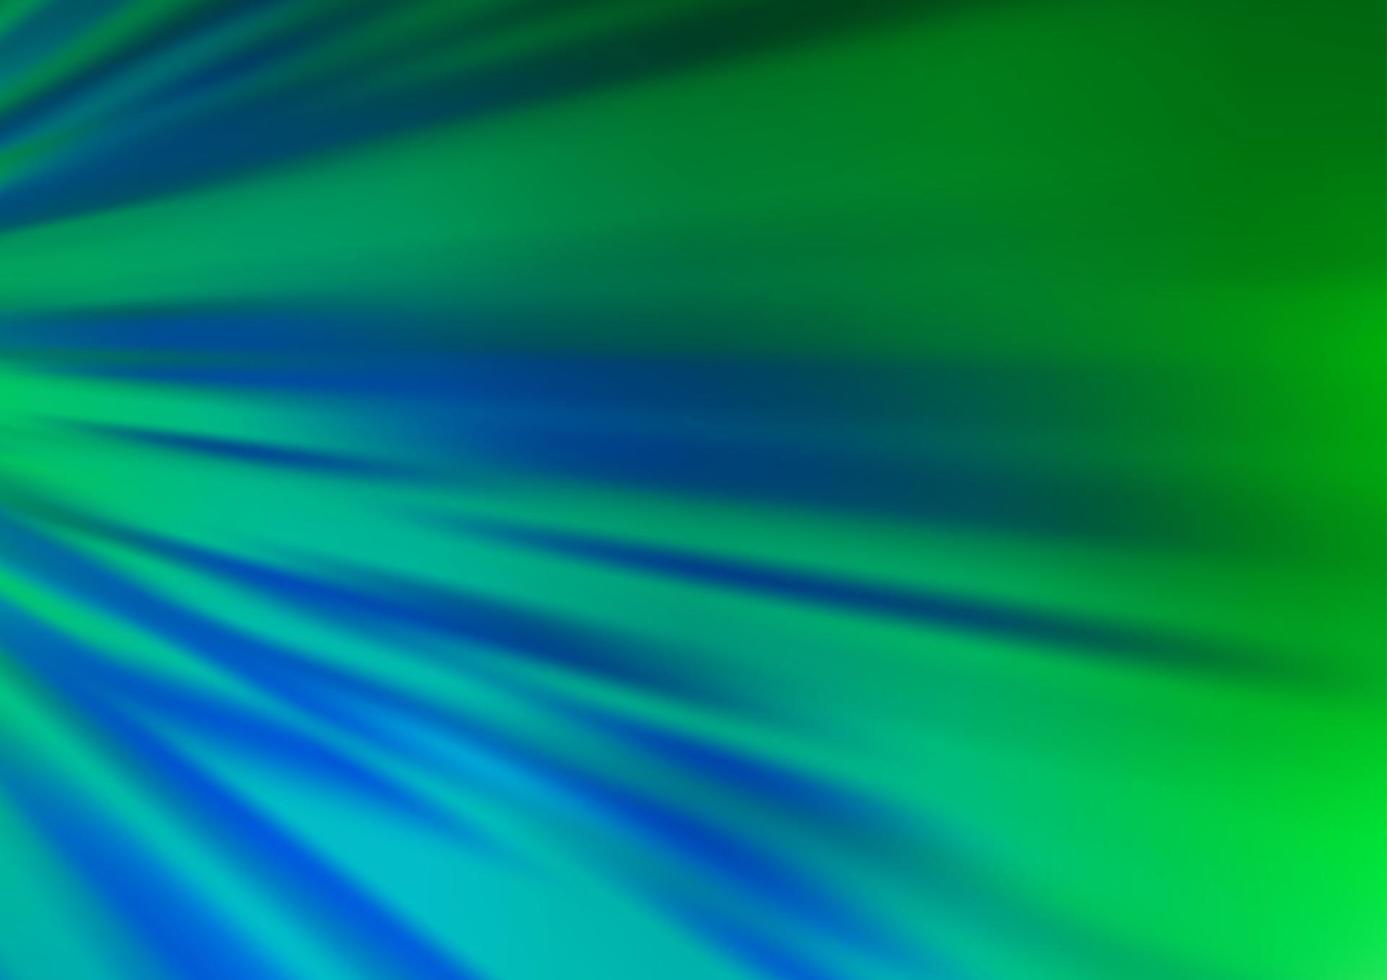 hellblaue, grüne Vektortextur mit farbigen Linien. vektor